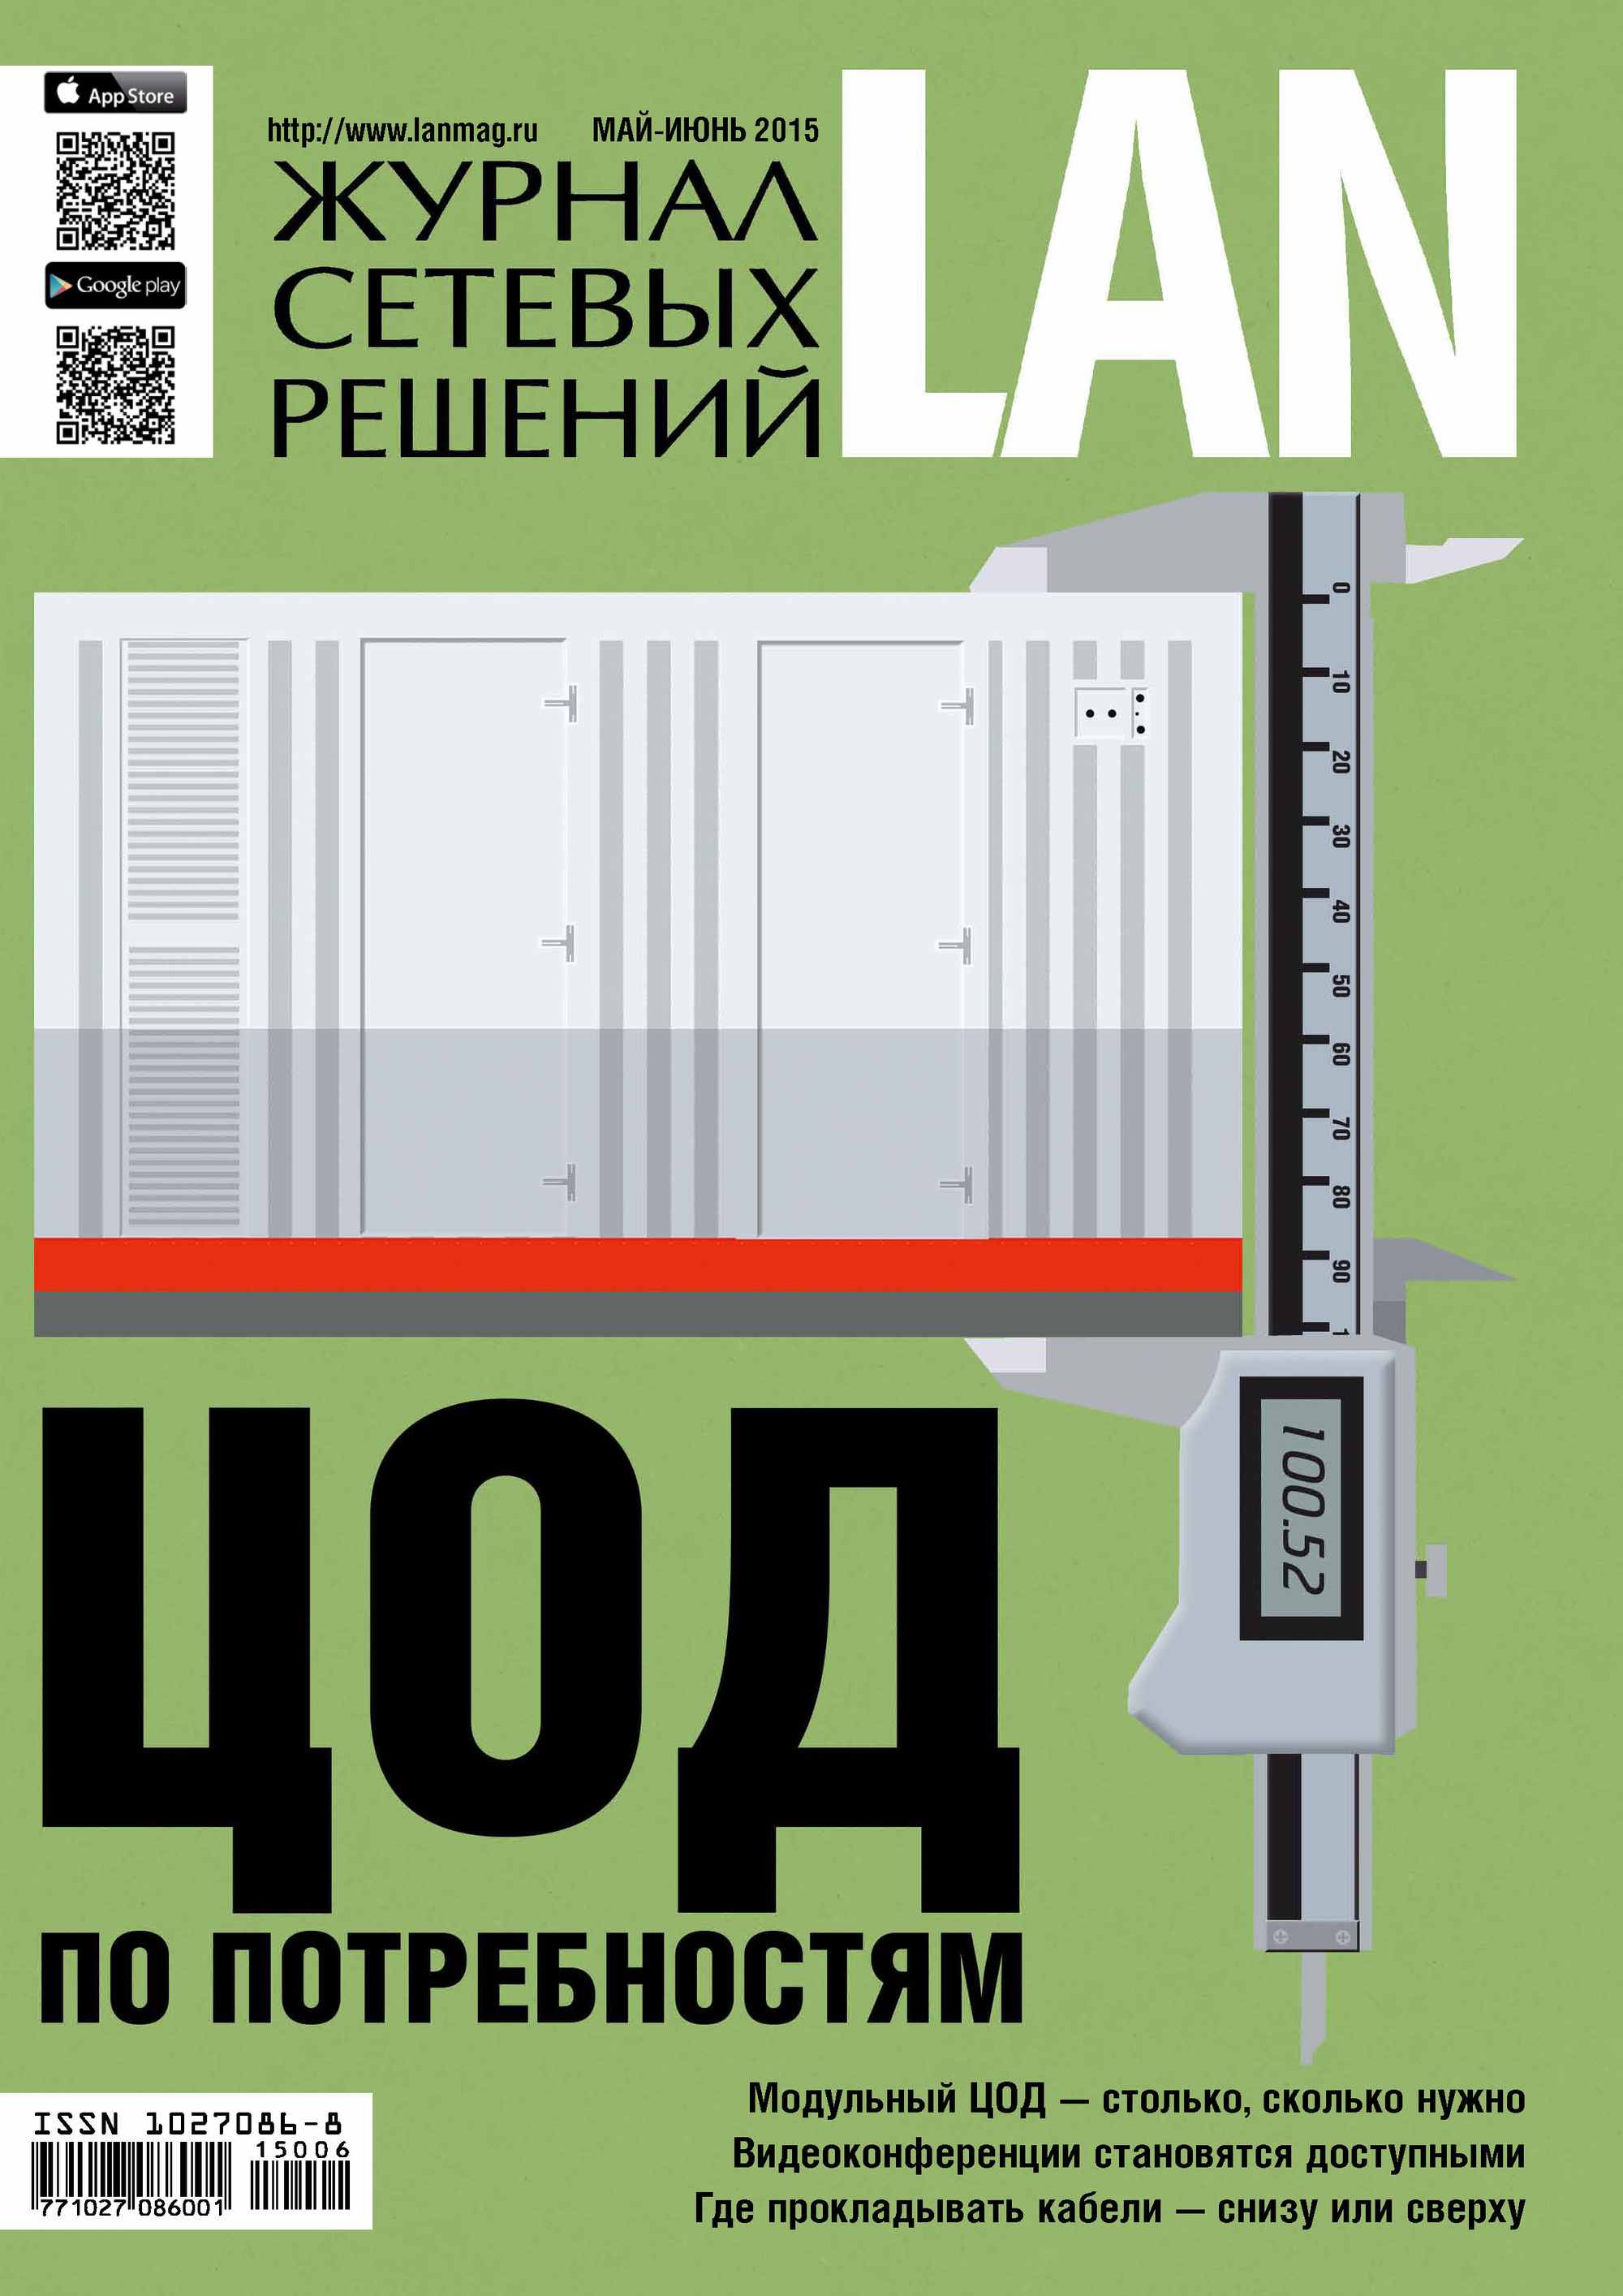 Книга Журнал сетевых решений / LAN 2015 Журнал сетевых решений / LAN №05-06/2015 созданная Открытые системы, Открытые системы может относится к жанру компьютерные журналы, ОС и сети, отраслевые издания. Стоимость электронной книги Журнал сетевых решений / LAN №05-06/2015 с идентификатором 10315886 составляет 216.00 руб.